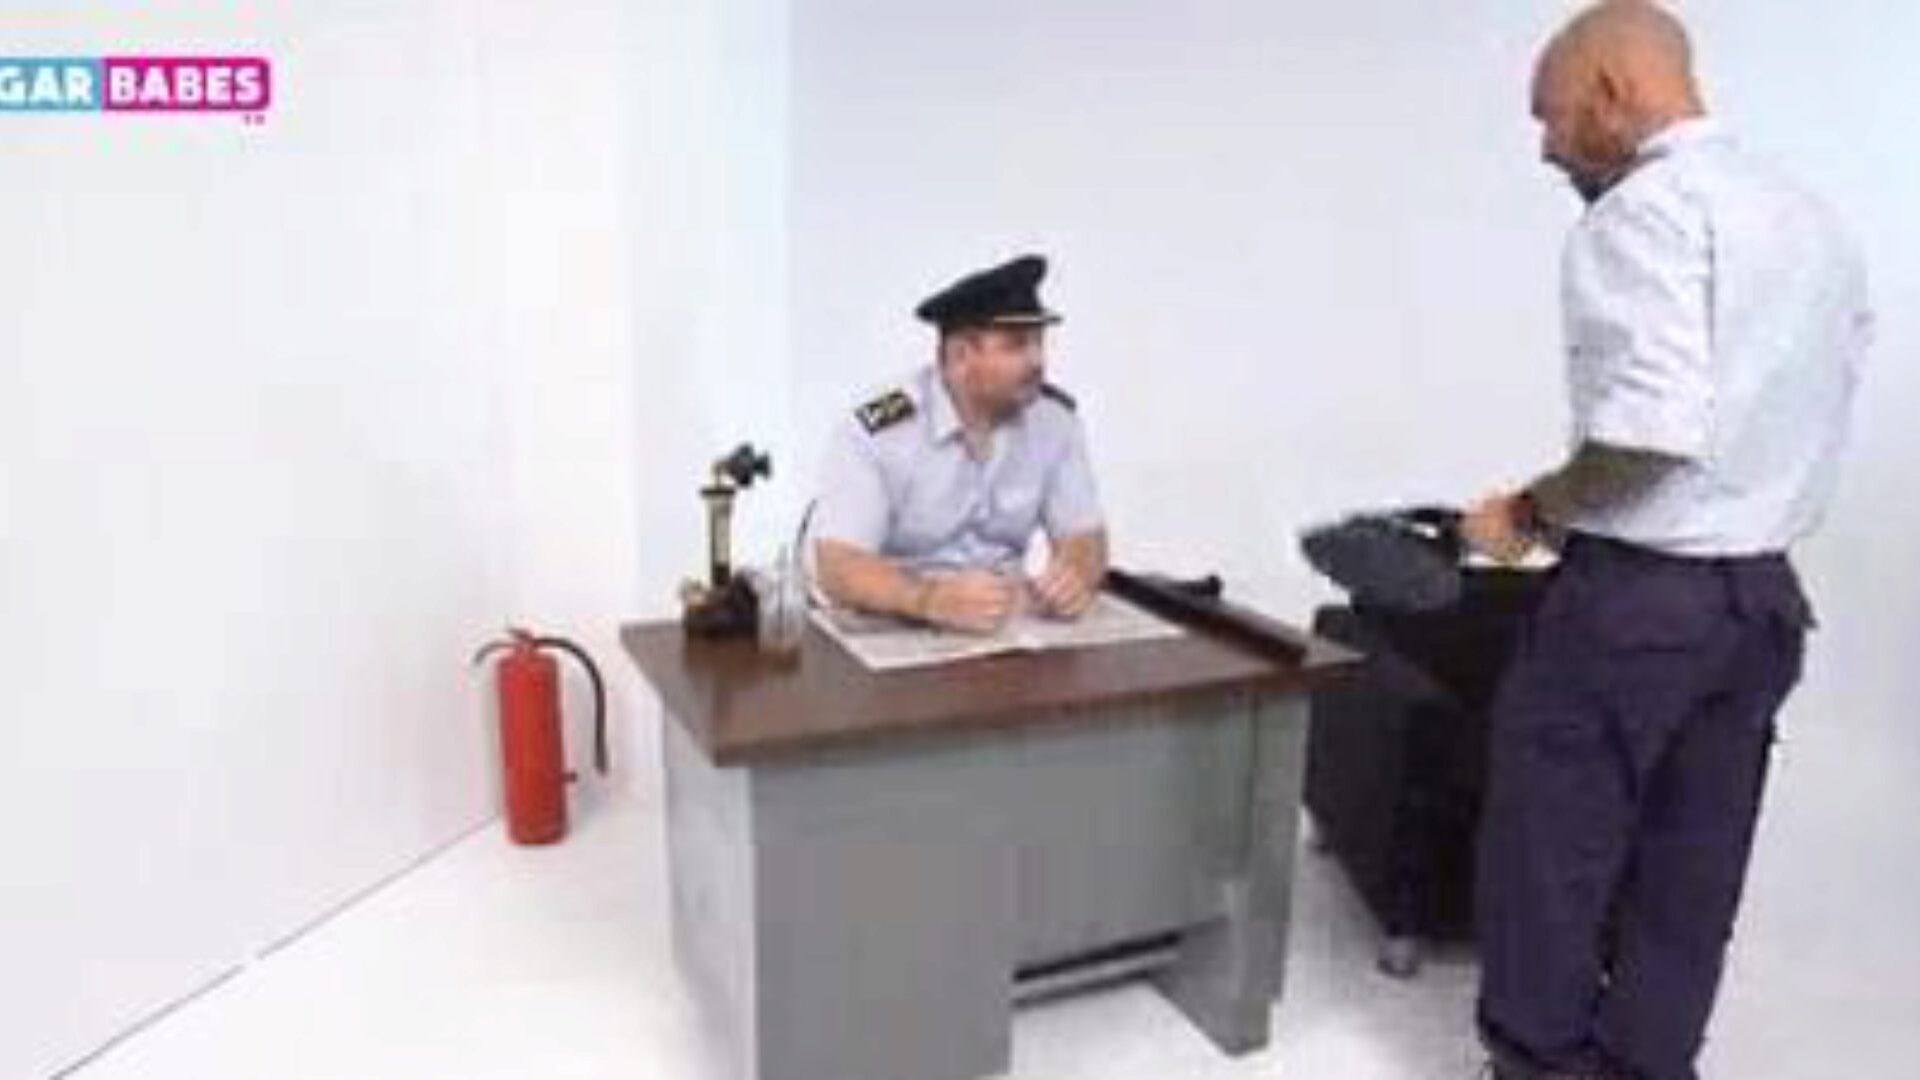 сугарбабеств: грчки полицајци лудо јебани